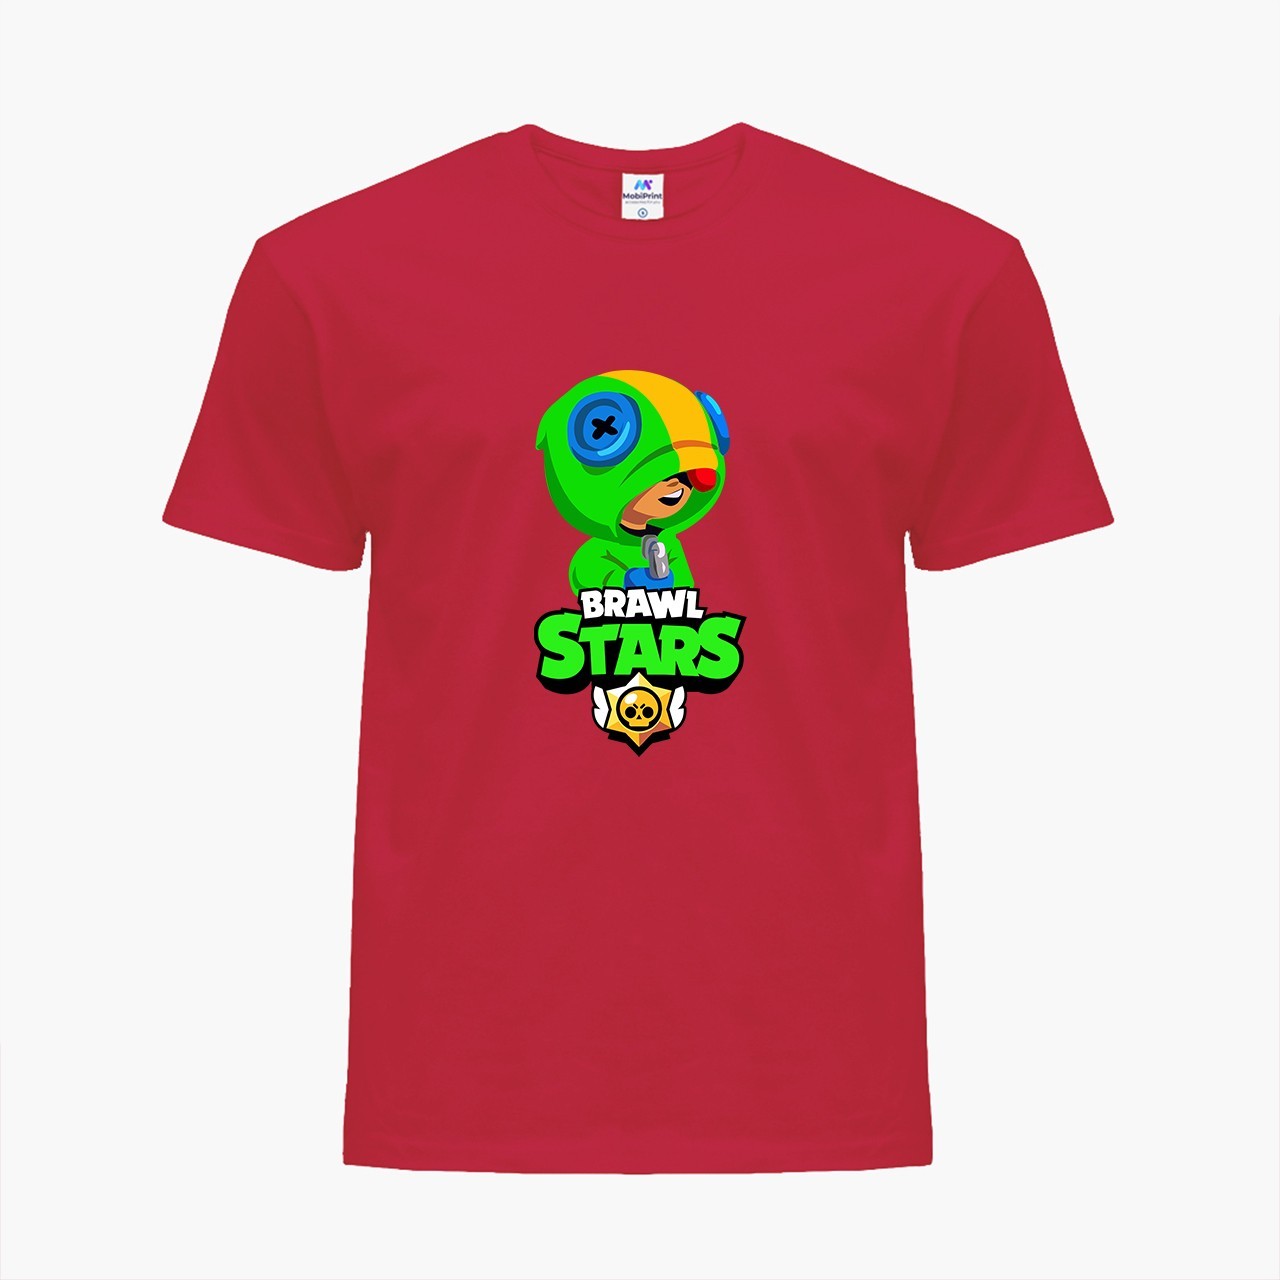 

Детская футболка Бравл Старс Леон Зеленый (Brawl Stars Leon Green) (25186-1015) 134-140 см Хлопок Красный